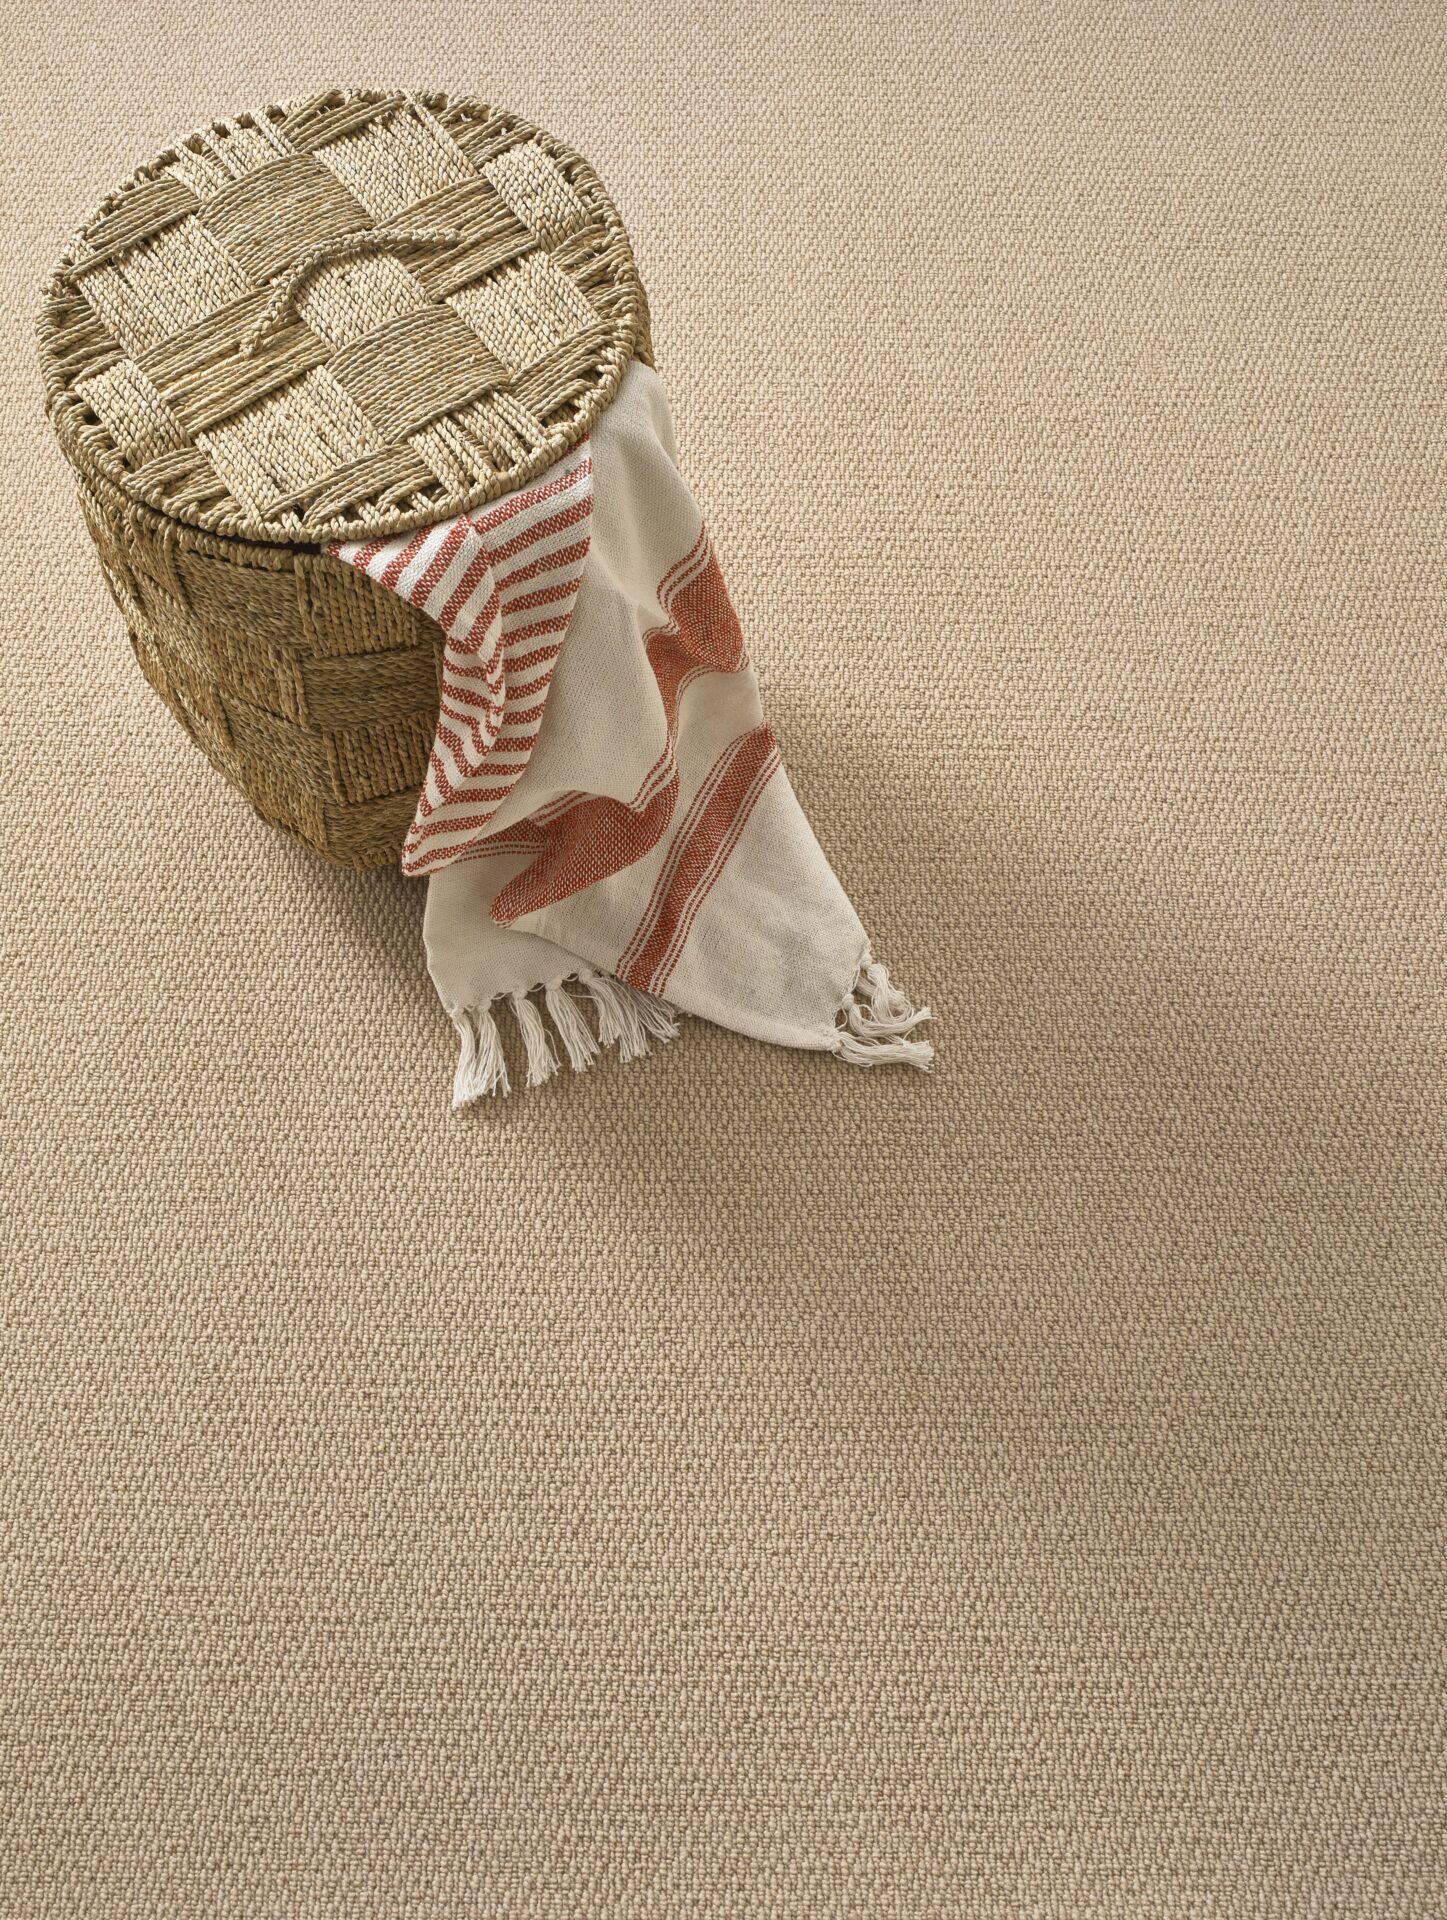 Designer Berber Wool Carpet